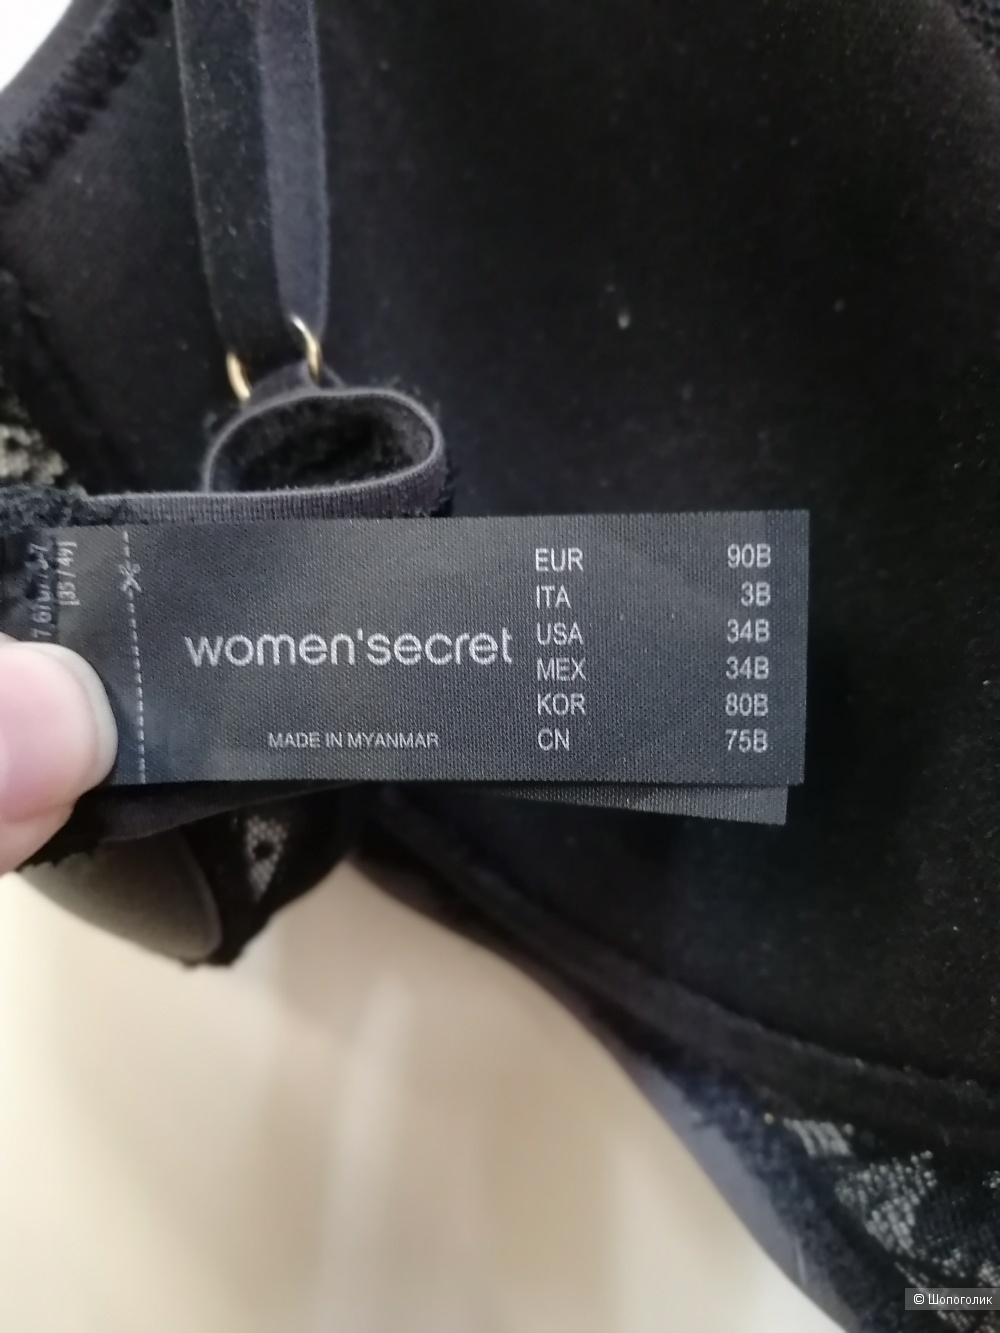 Бюстгалтер Women'secret EUR 90В